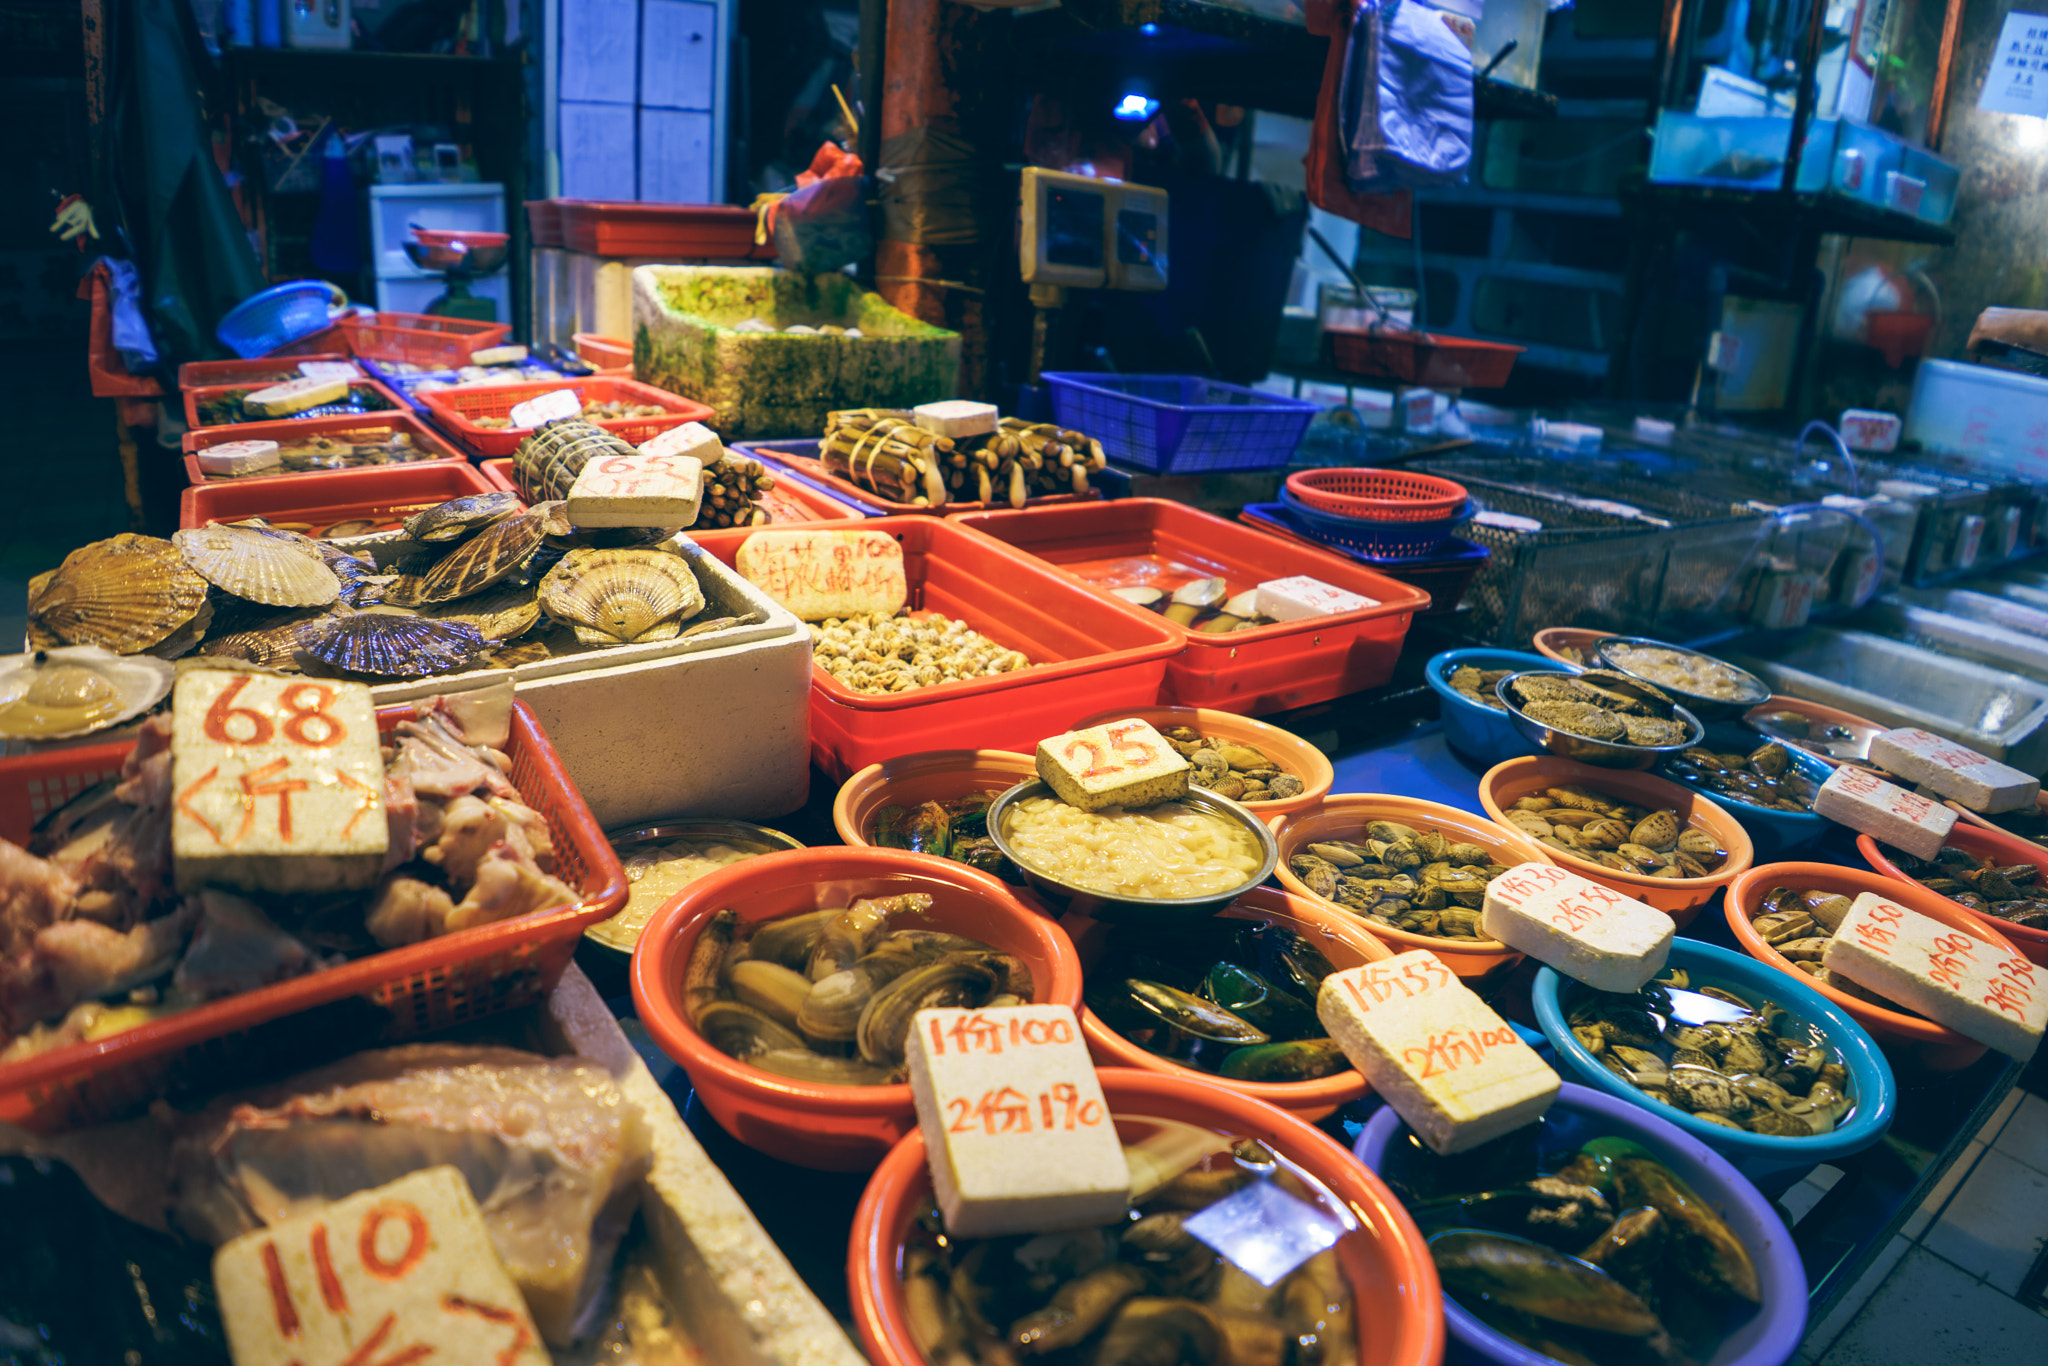 Sony a7 sample photo. Local hong kong fish market photography